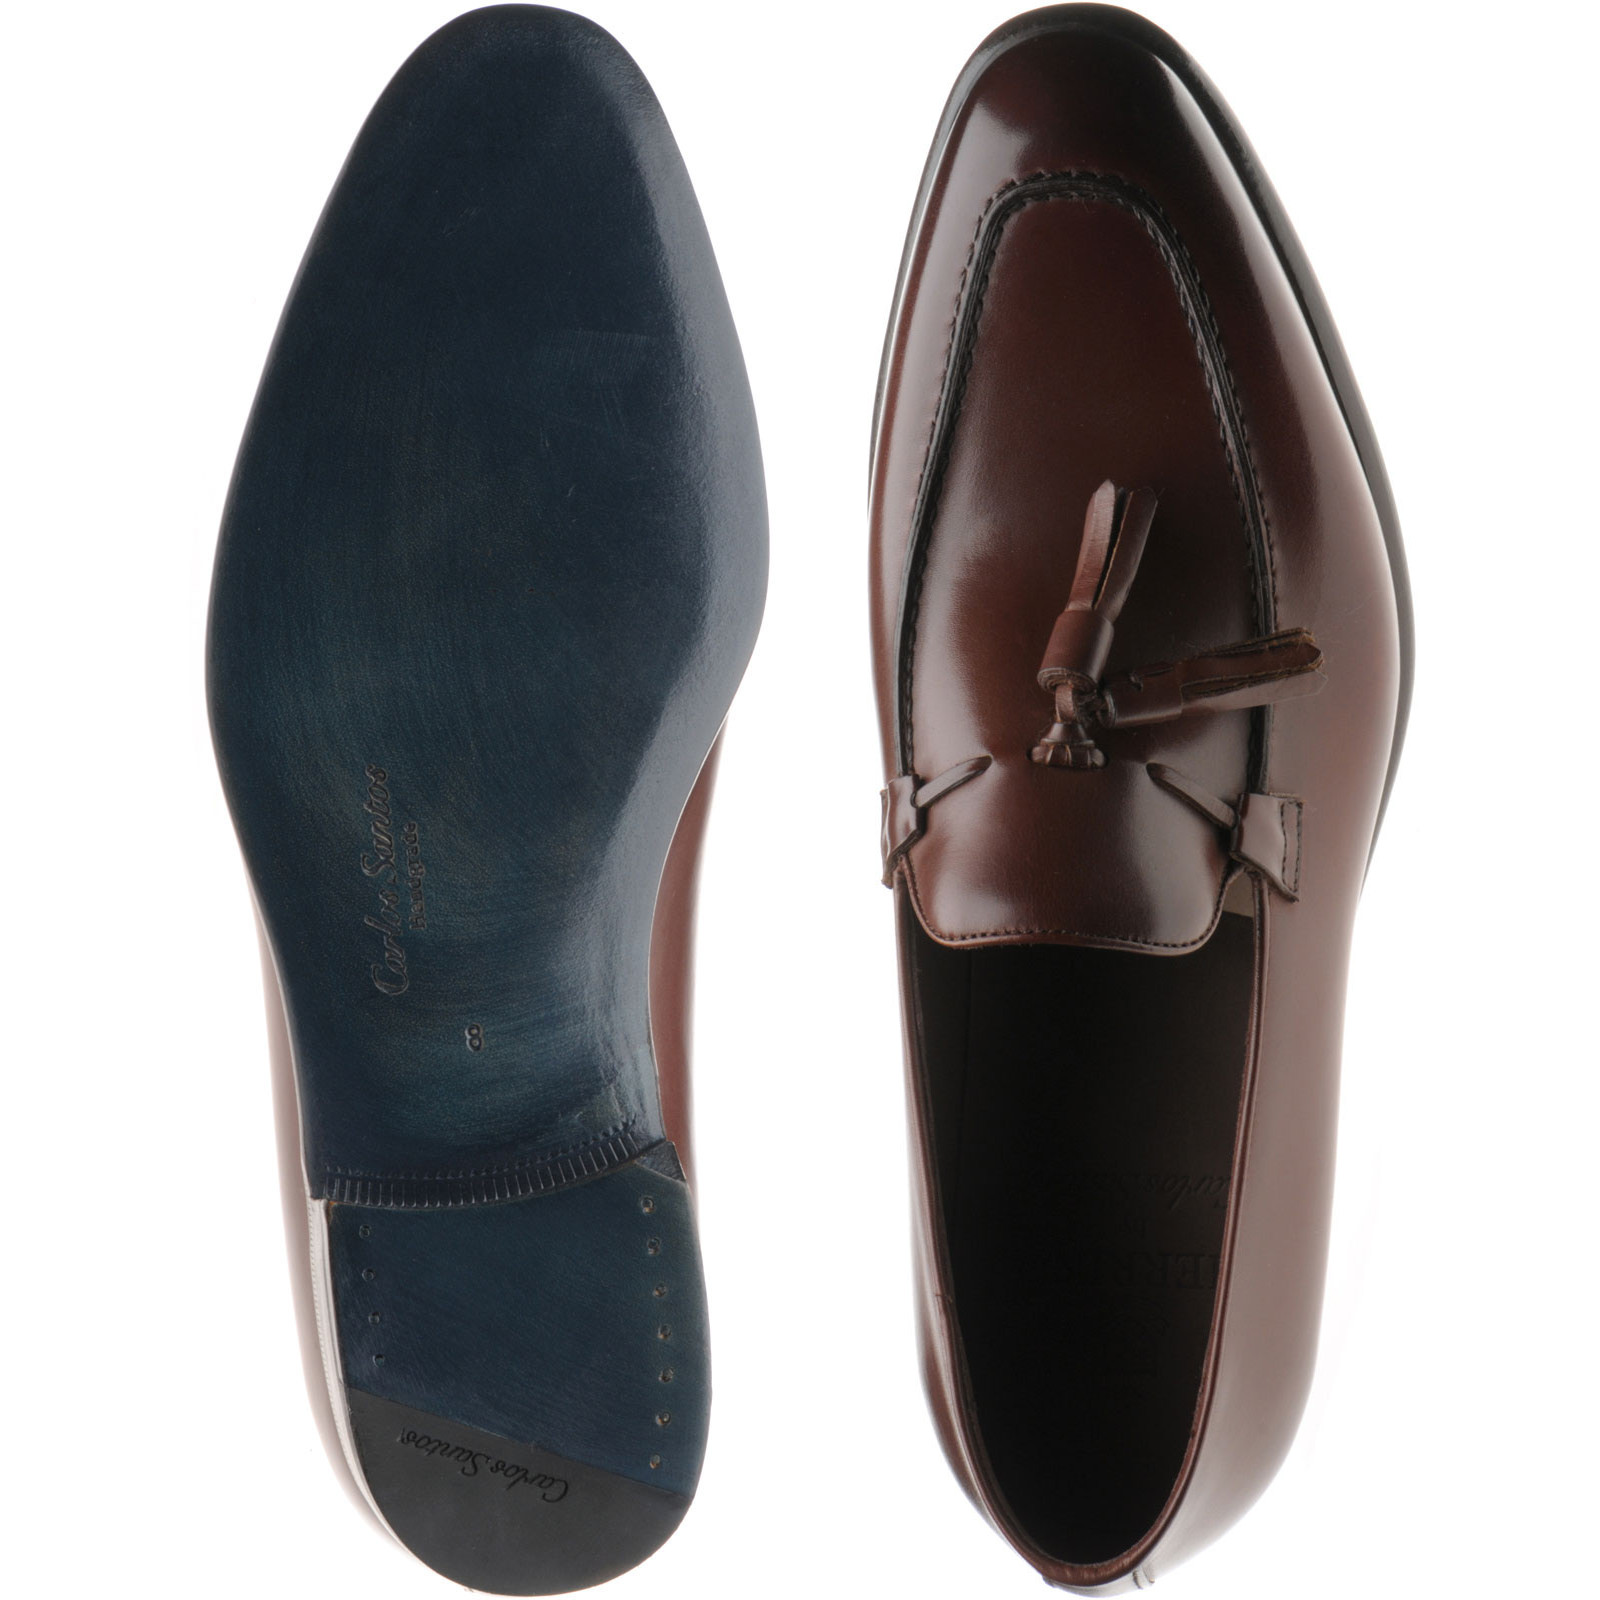 Herring shoes | Herring Sale | Blackheath in Dark Brown Calf at Herring ...